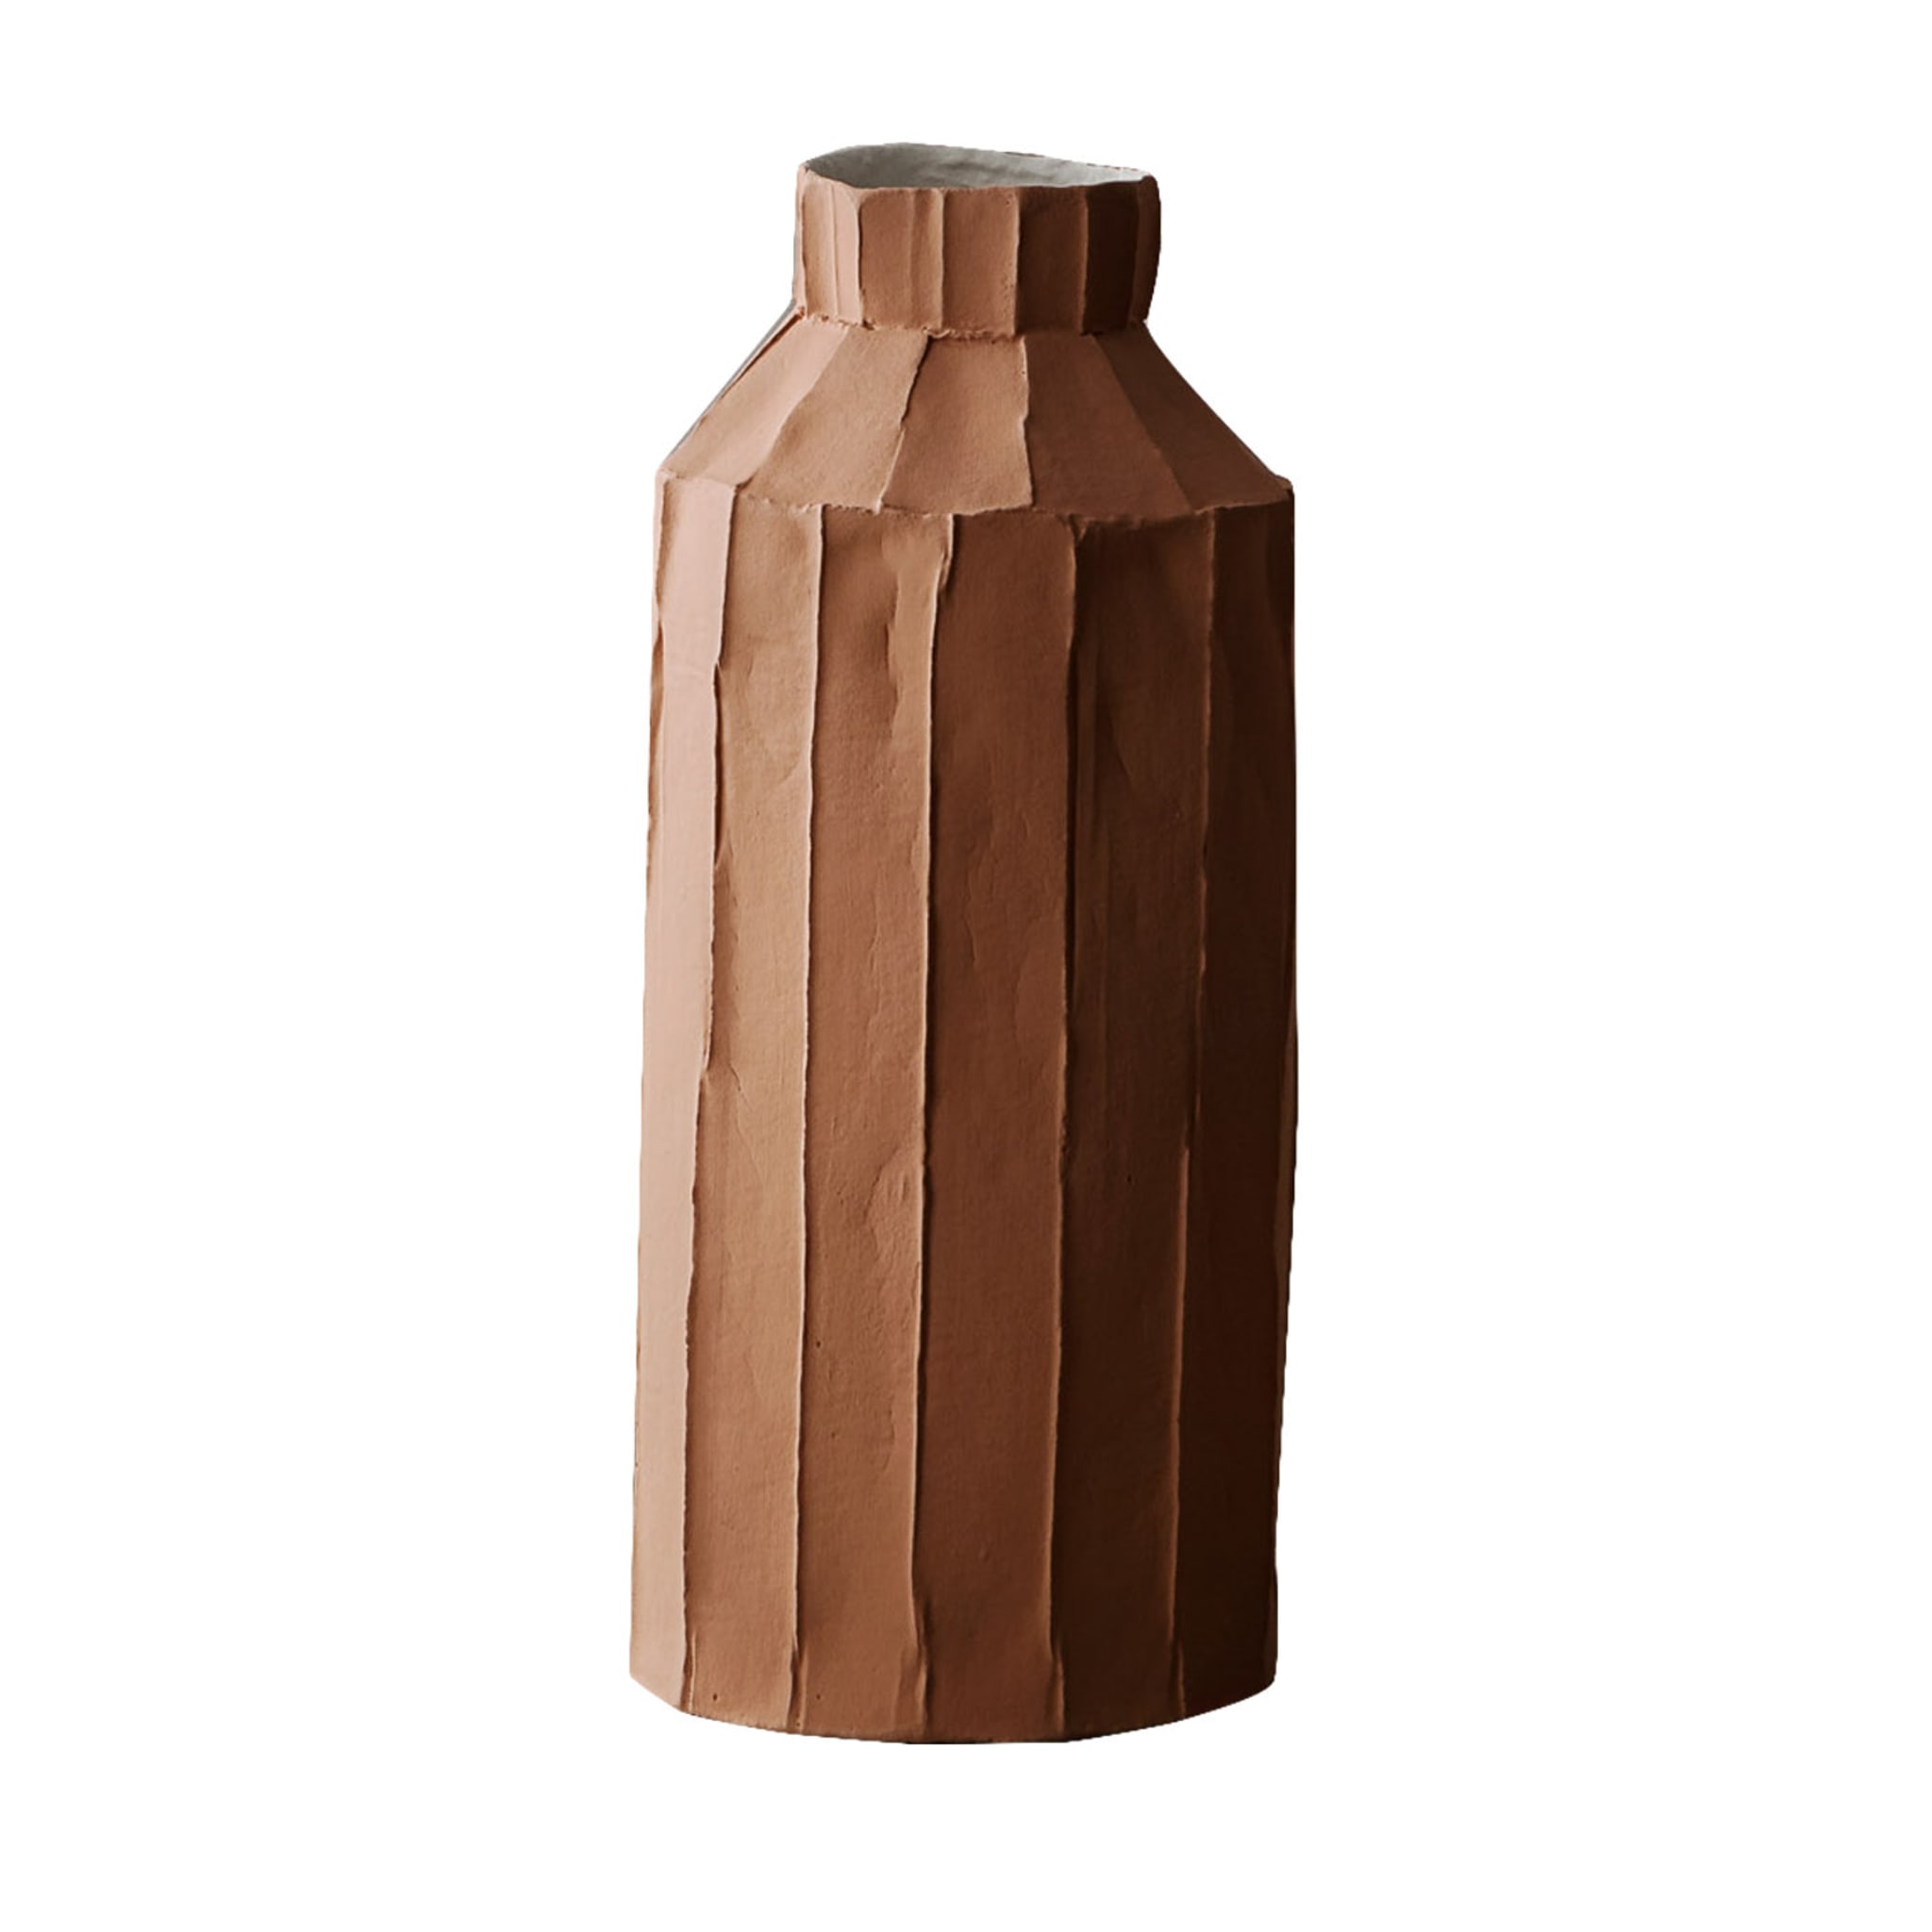 Cartocci Corteccia Fide Red Brick Vase - Main view